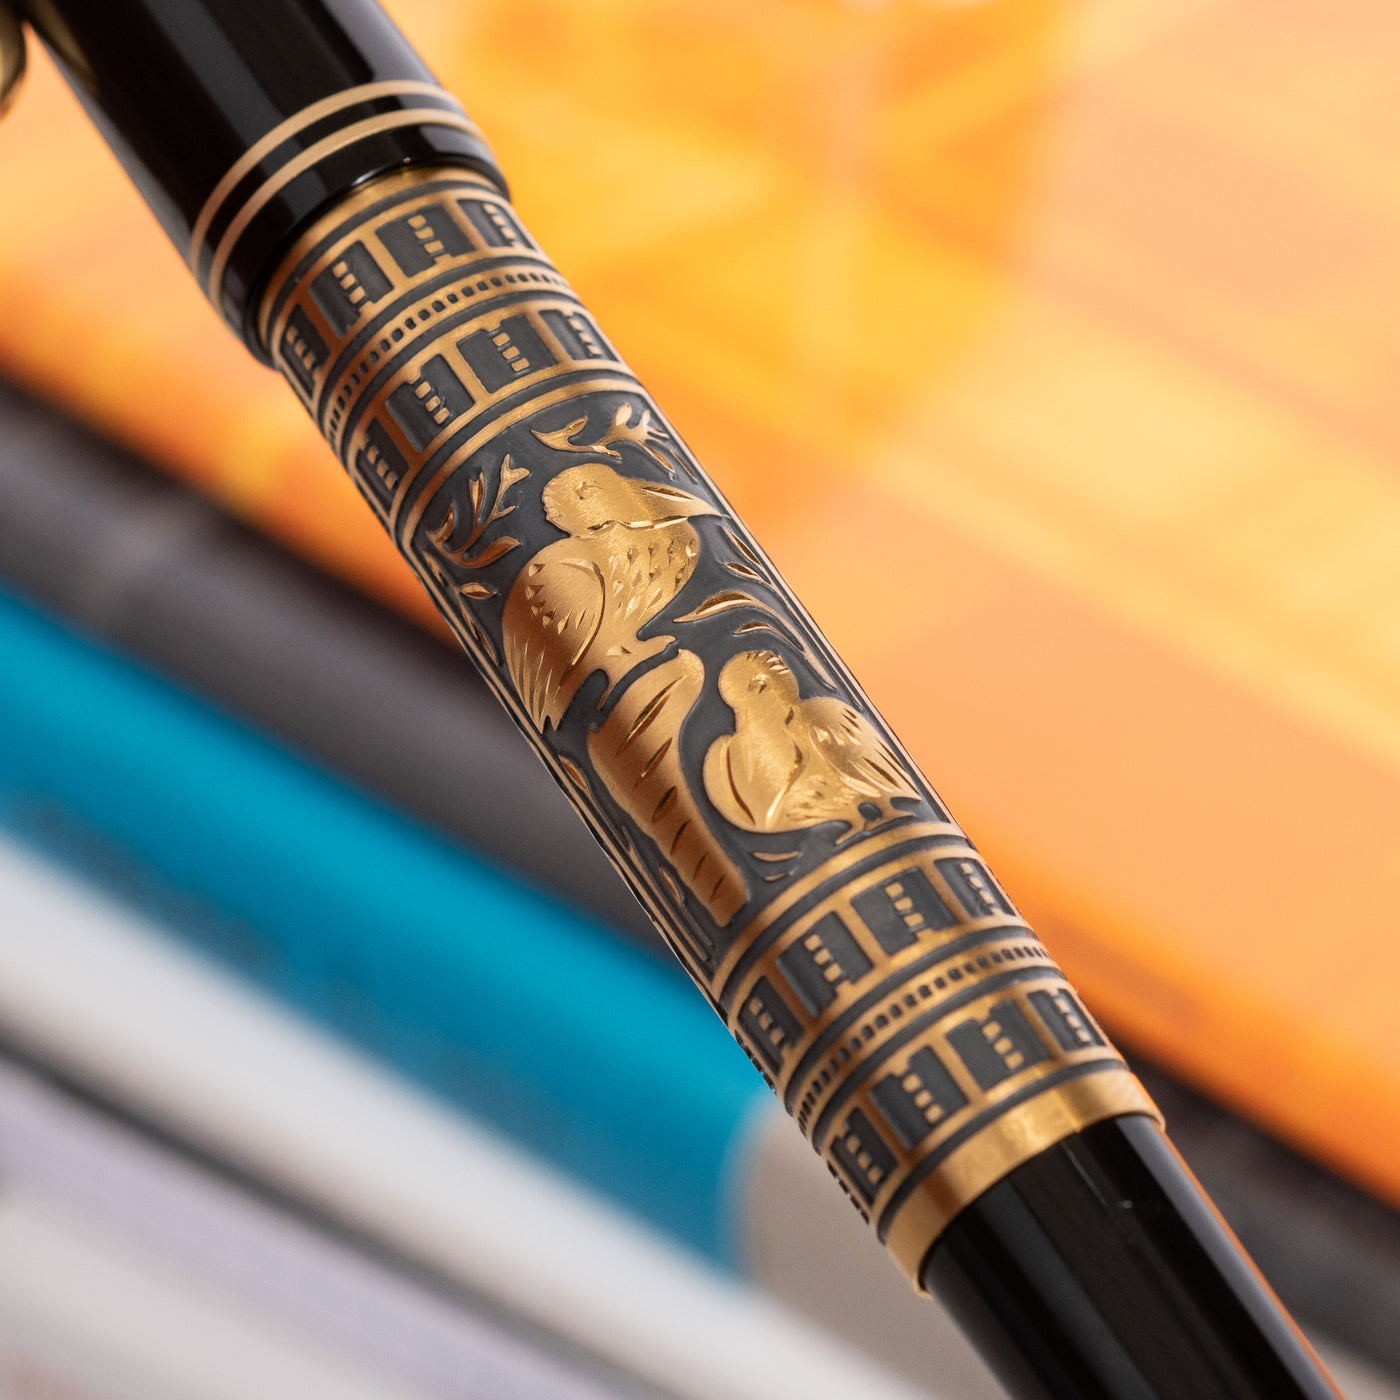 Pelikan Souveran M700 Special Edition Toledo Fountain Pen Engraving